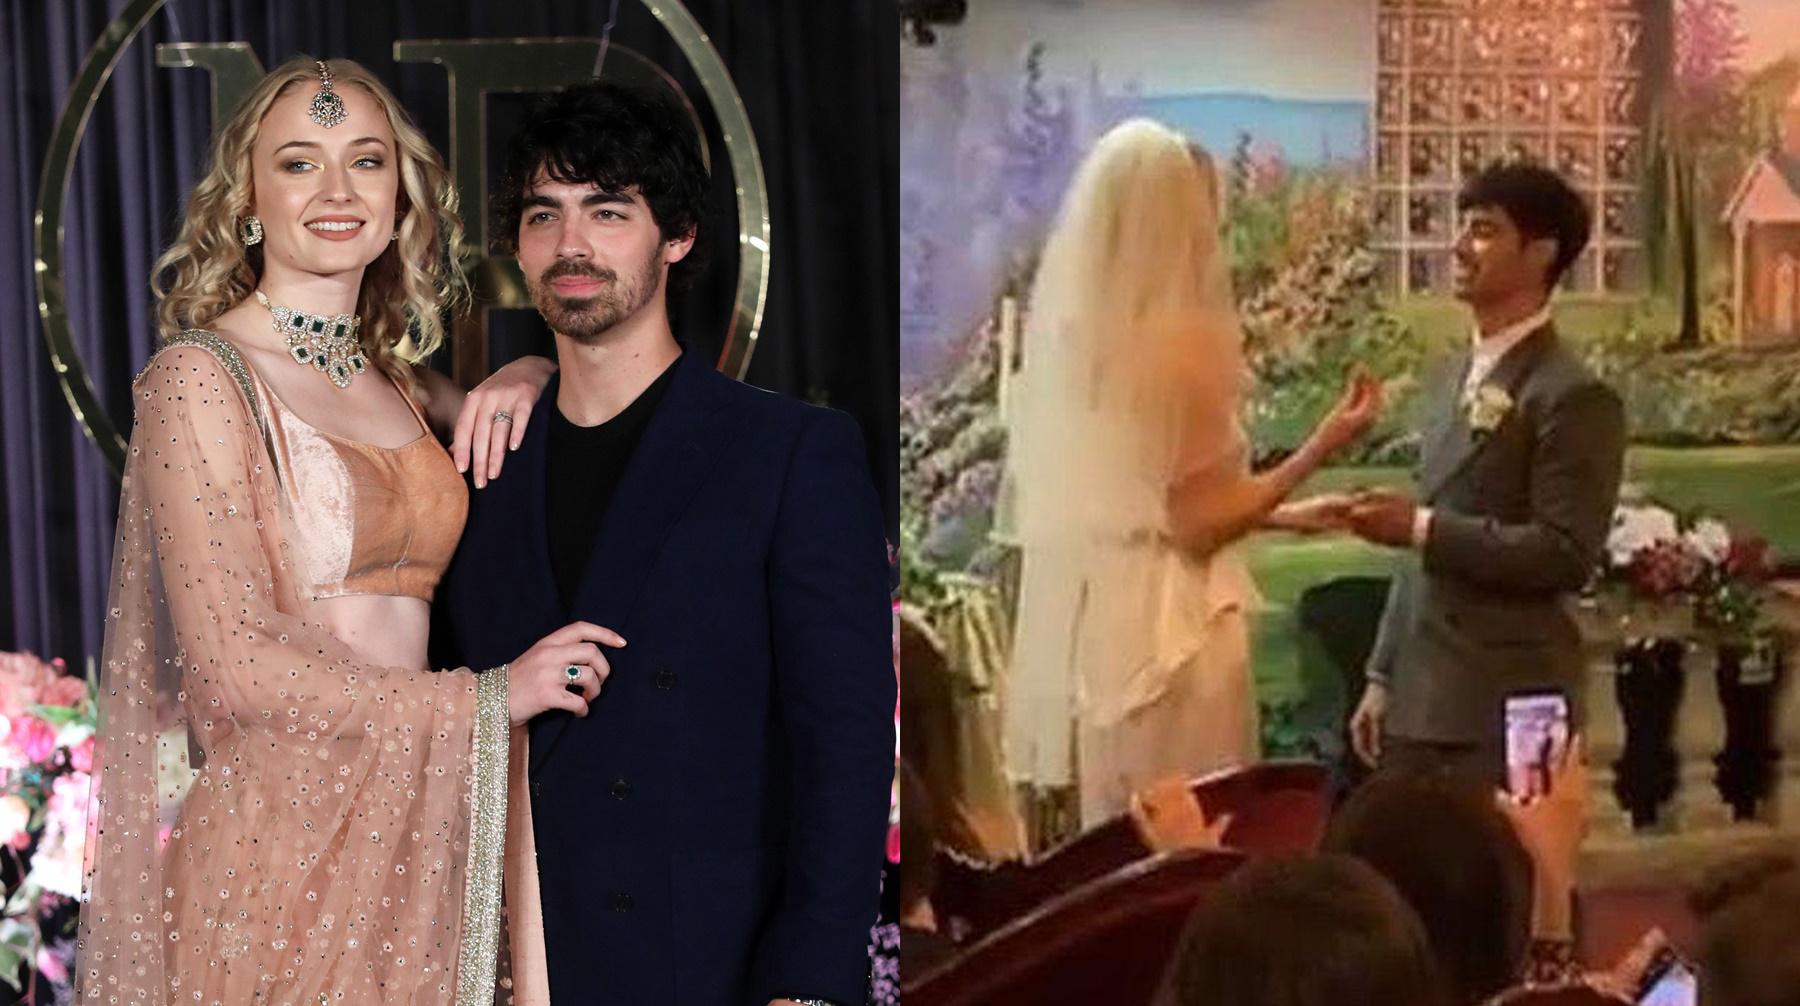 El cantante Joe Jonas y la actriz de "Game of Thrones" Sophie Turner, comprometidos desde hace meses, se casaron sorpresivamente en Las Vegas. (Foto: Captura)